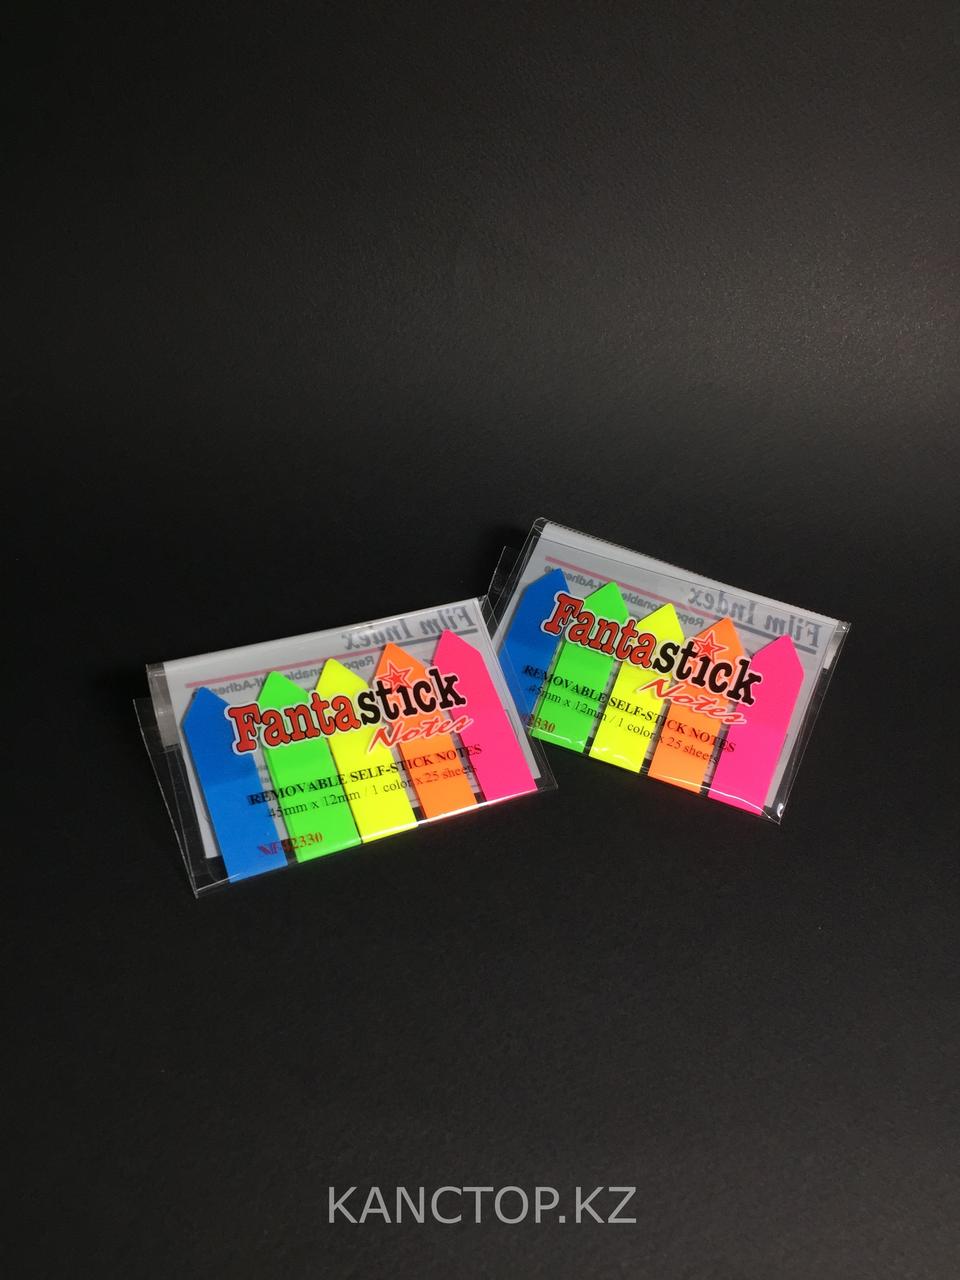 Пластиковые закладки для заметок FANTASTICK, разноцветные.